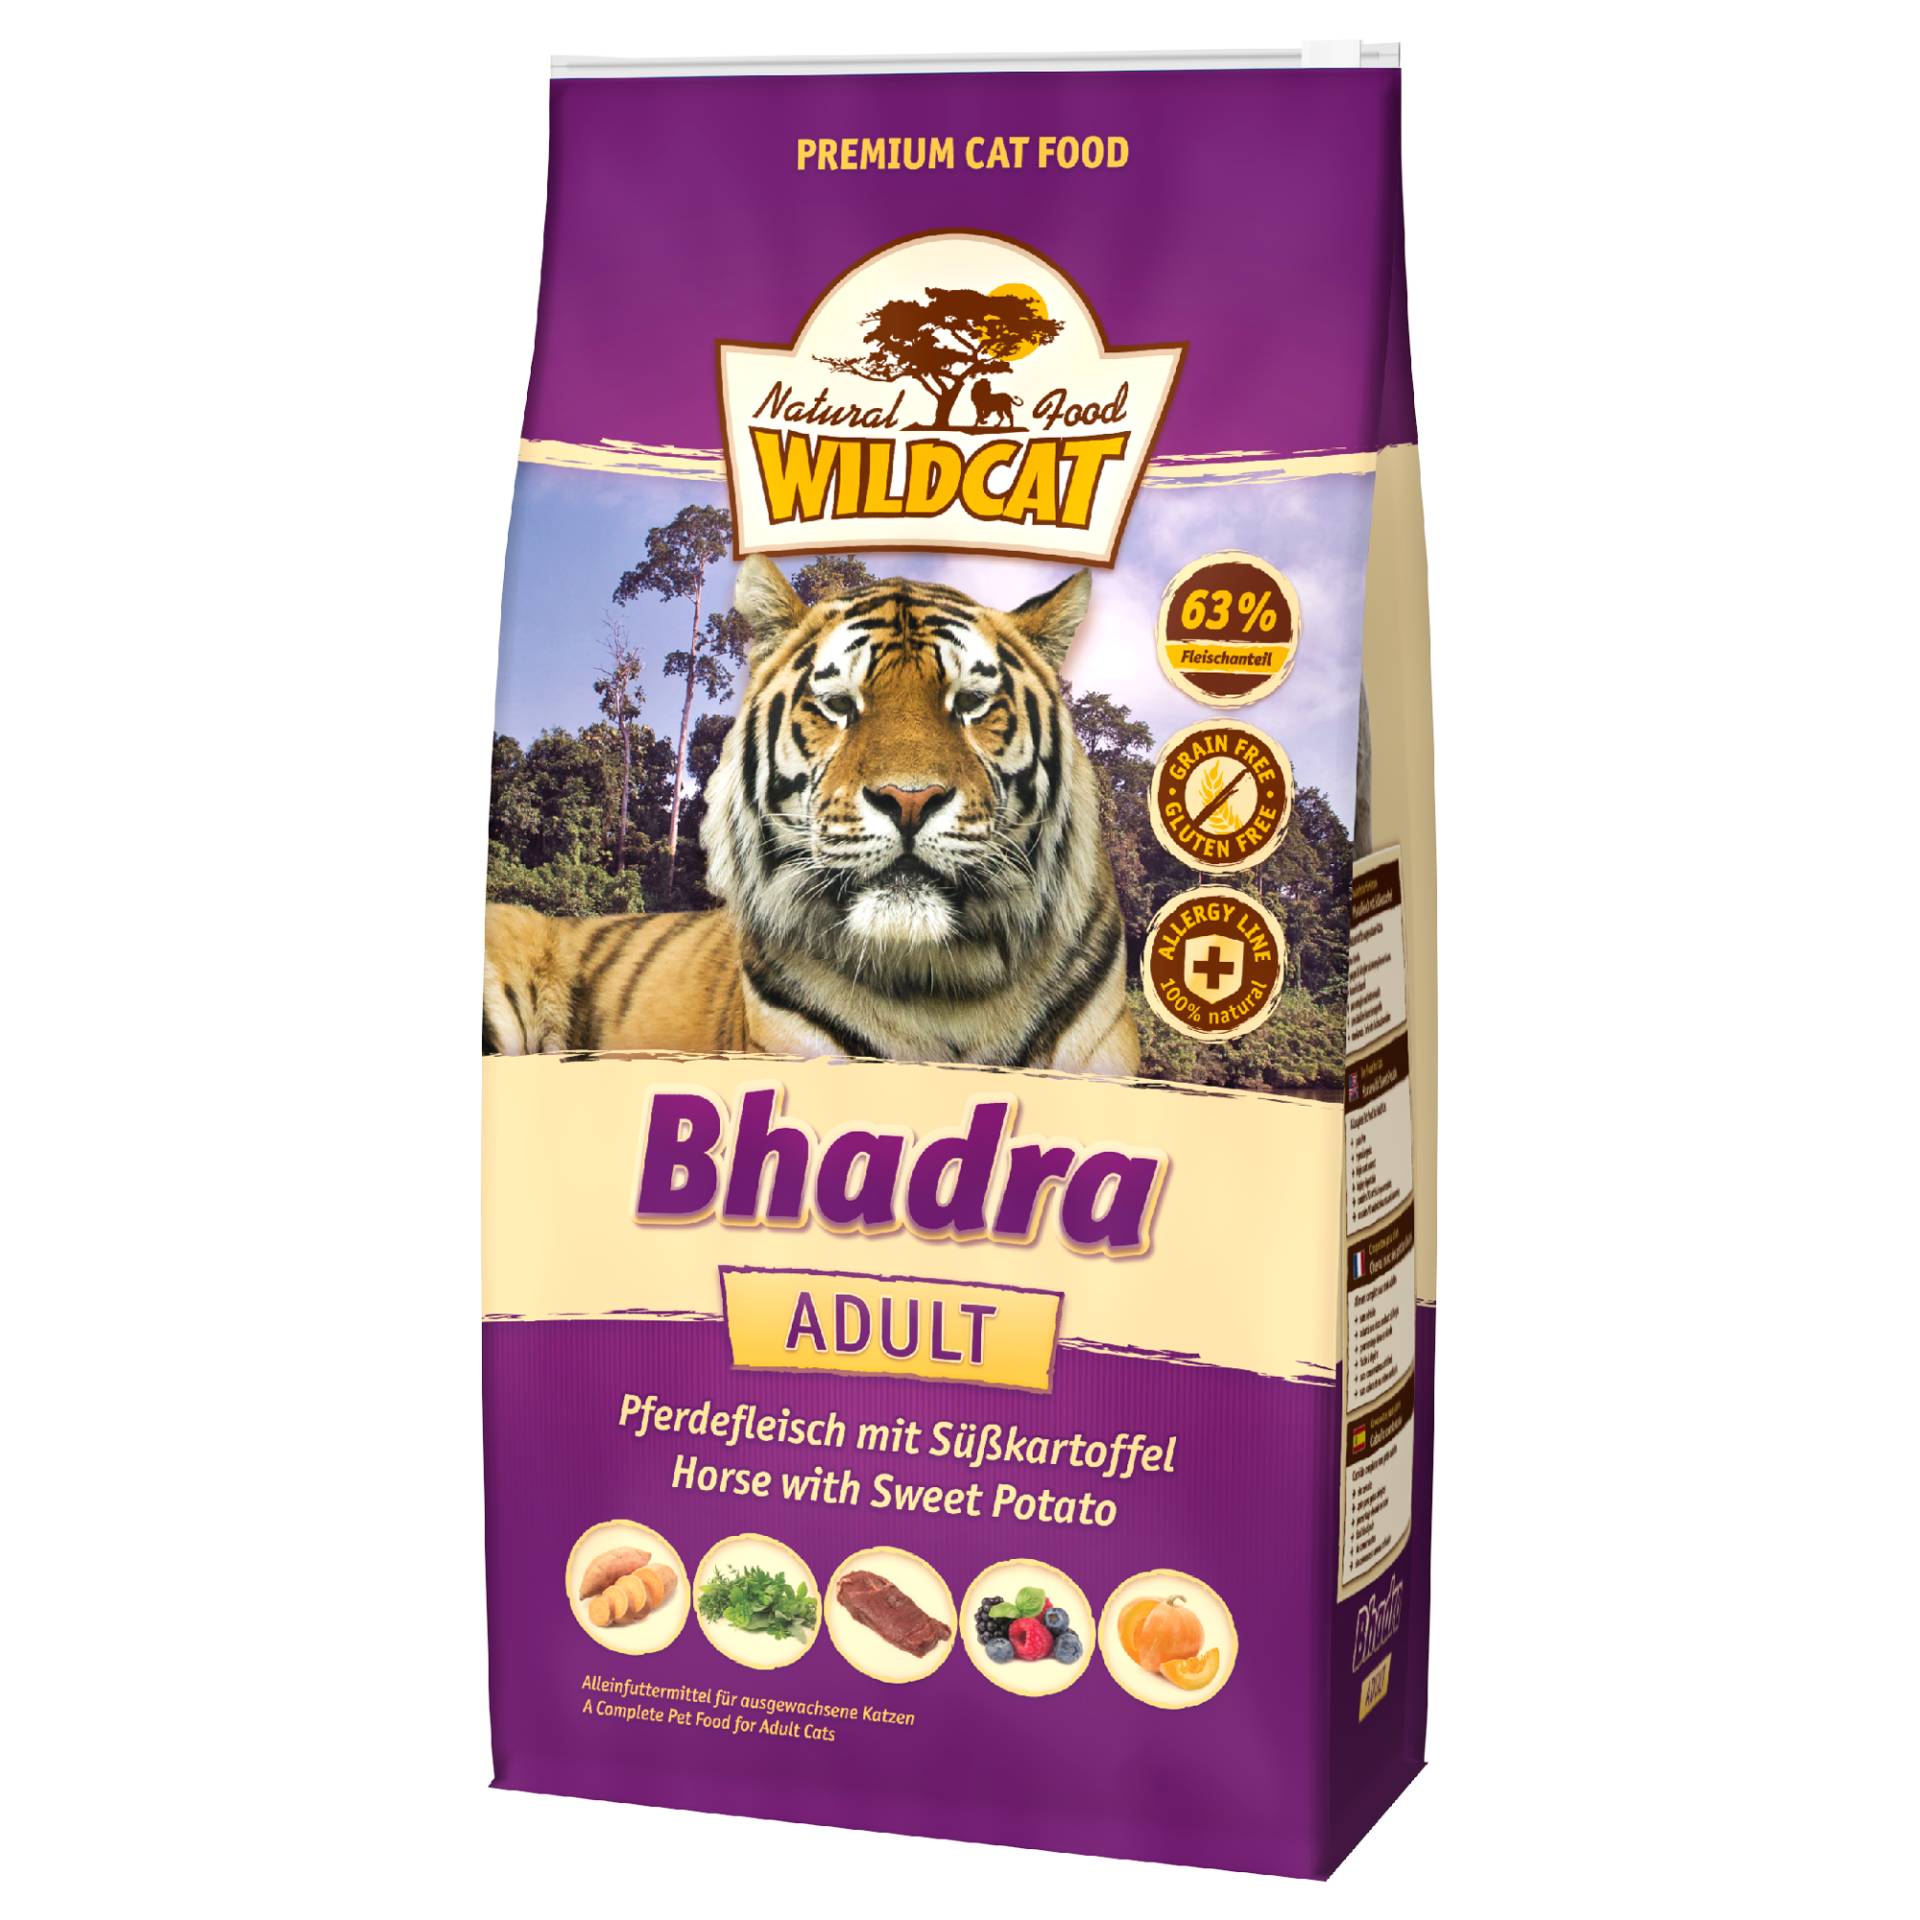 Wildcat | Bhadra Pferdefleisch | Adult | 500 g von Wildcat